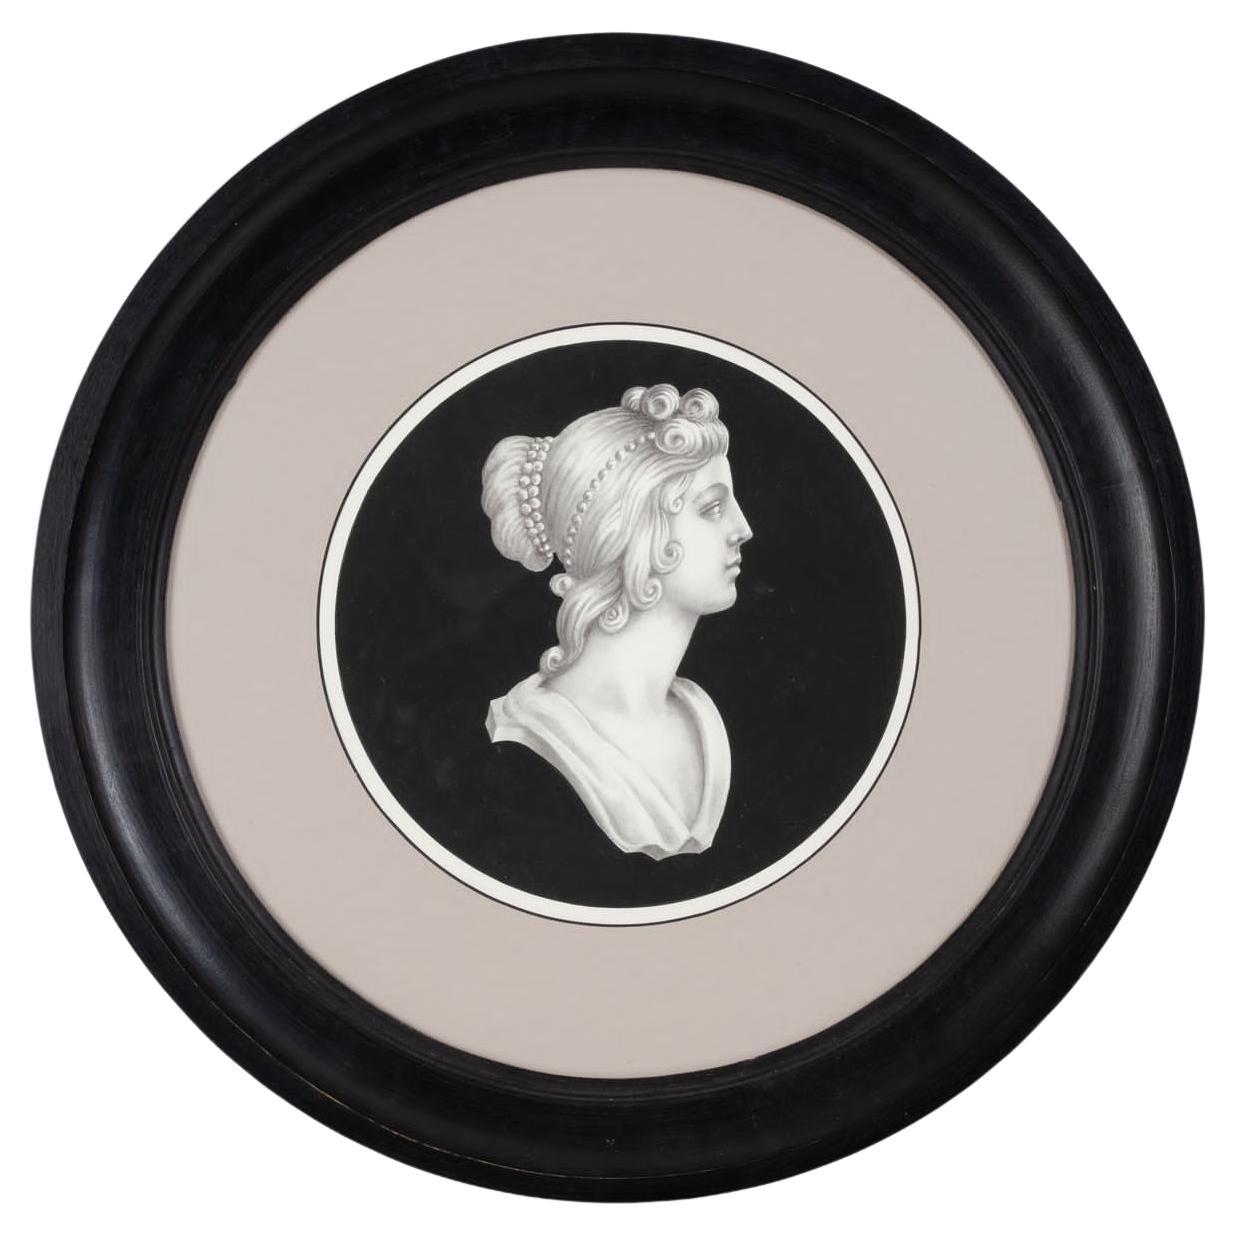 Einer von zwei schönen neoklassischen Frau Profil Druck mit schwarzem Hintergrund, gerahmt von  ein zartes taupefarbenes Passepartout und einen runden schwarzen Rahmen. 
Jeder Druck wird vollständig in Italien von unseren Meisterhandwerkern